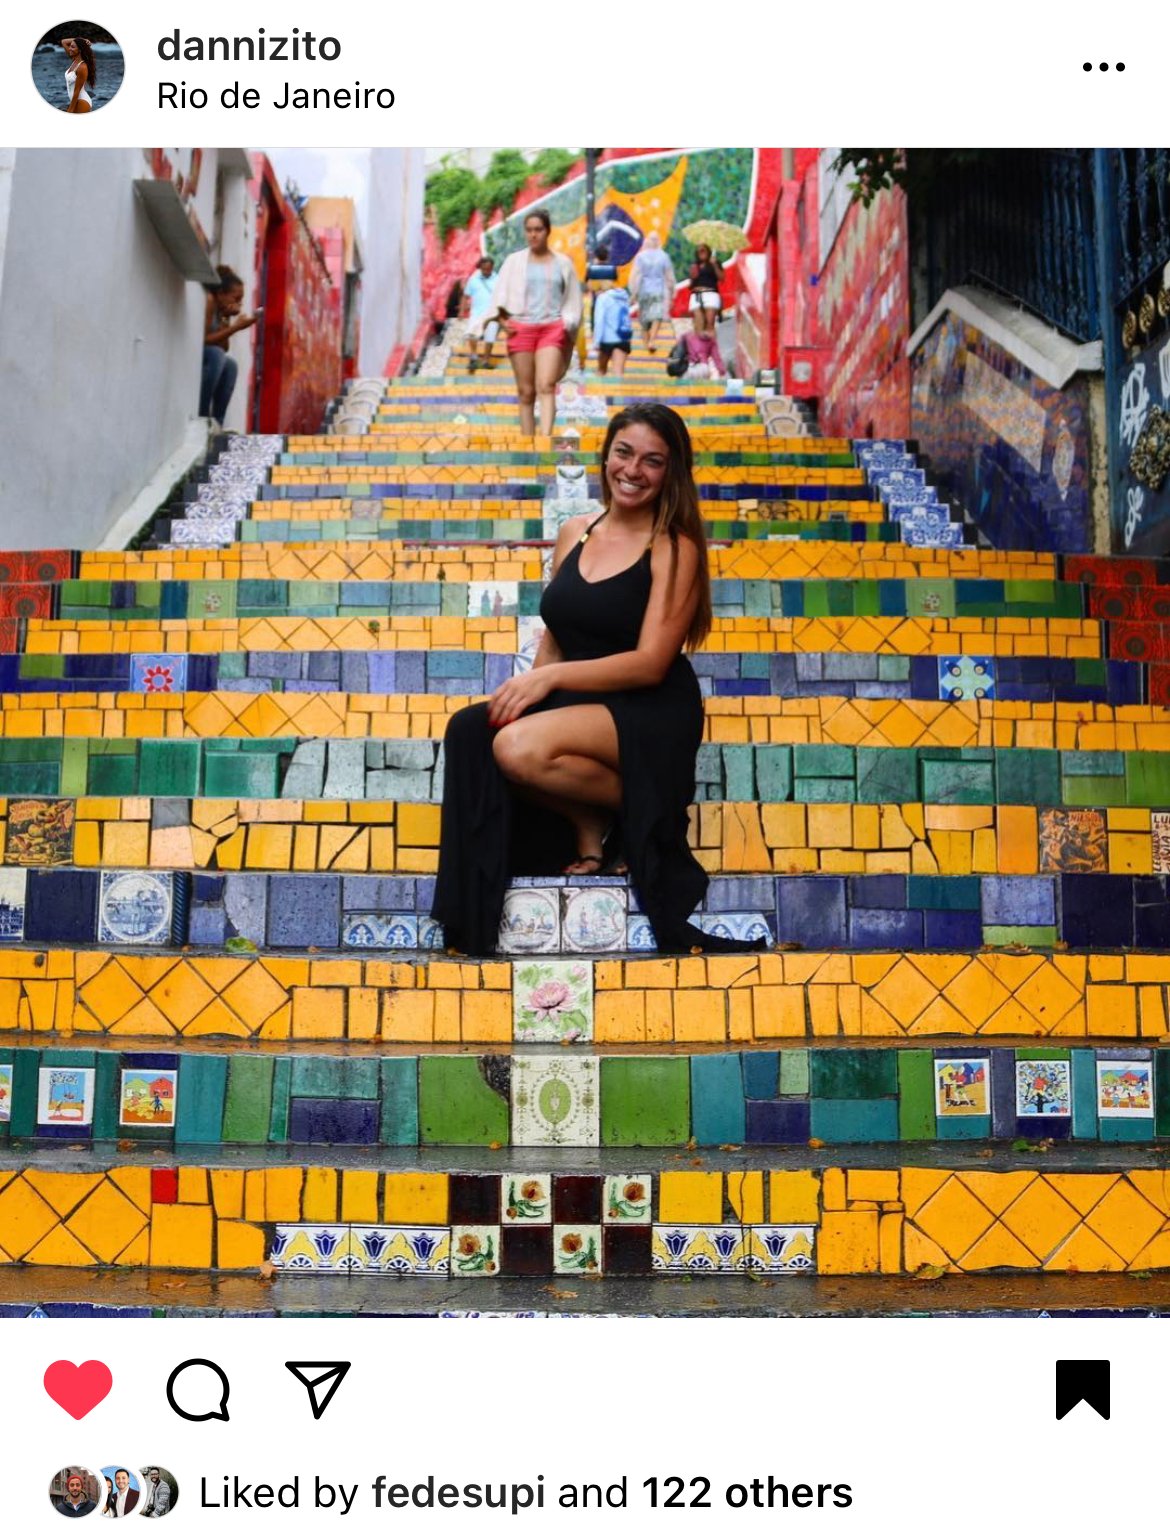 Escadaria Selaron, Instagrammable places in Rio de Janeiro